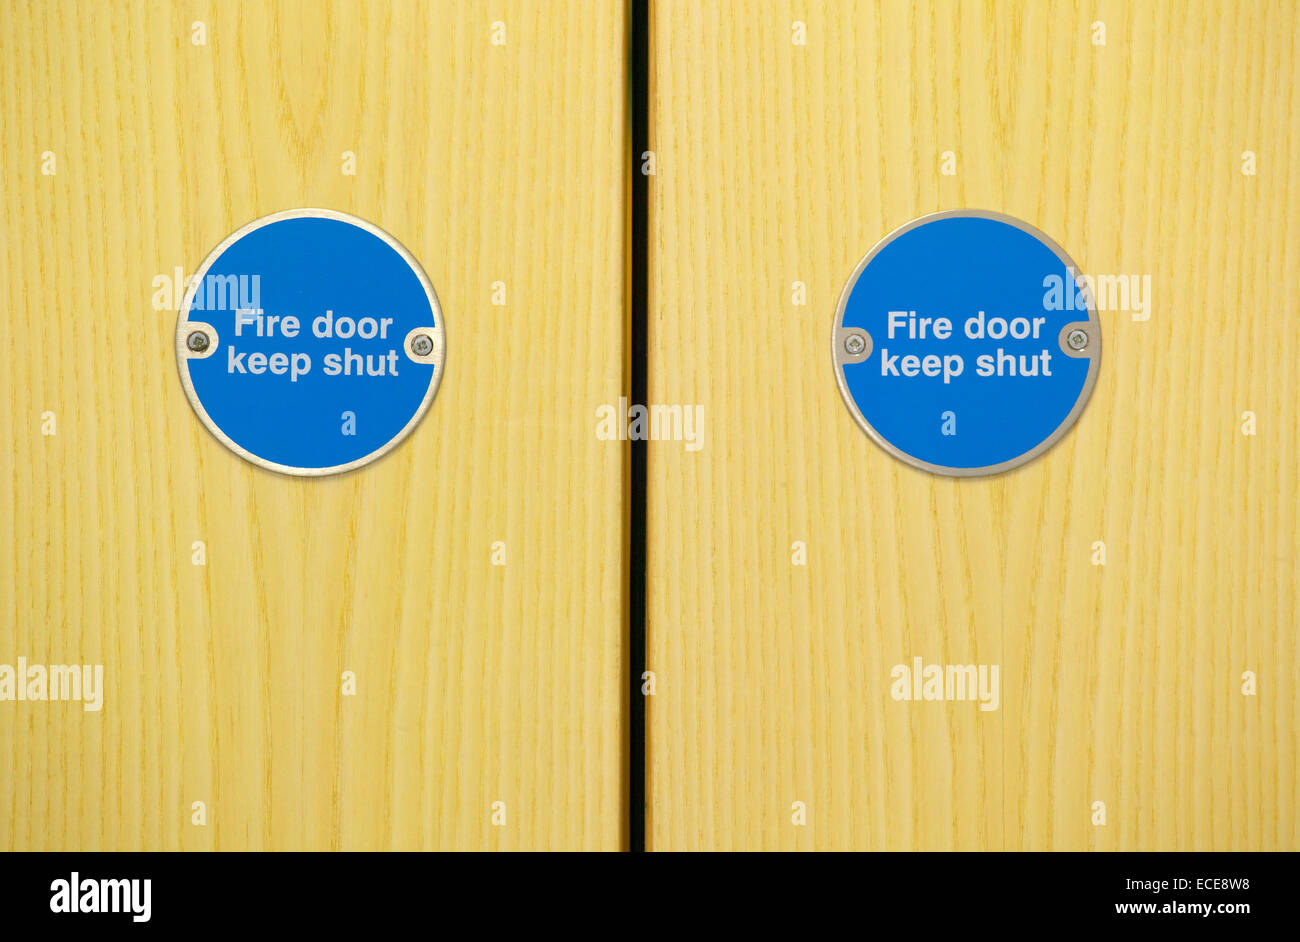 Fire doors Stock Photo